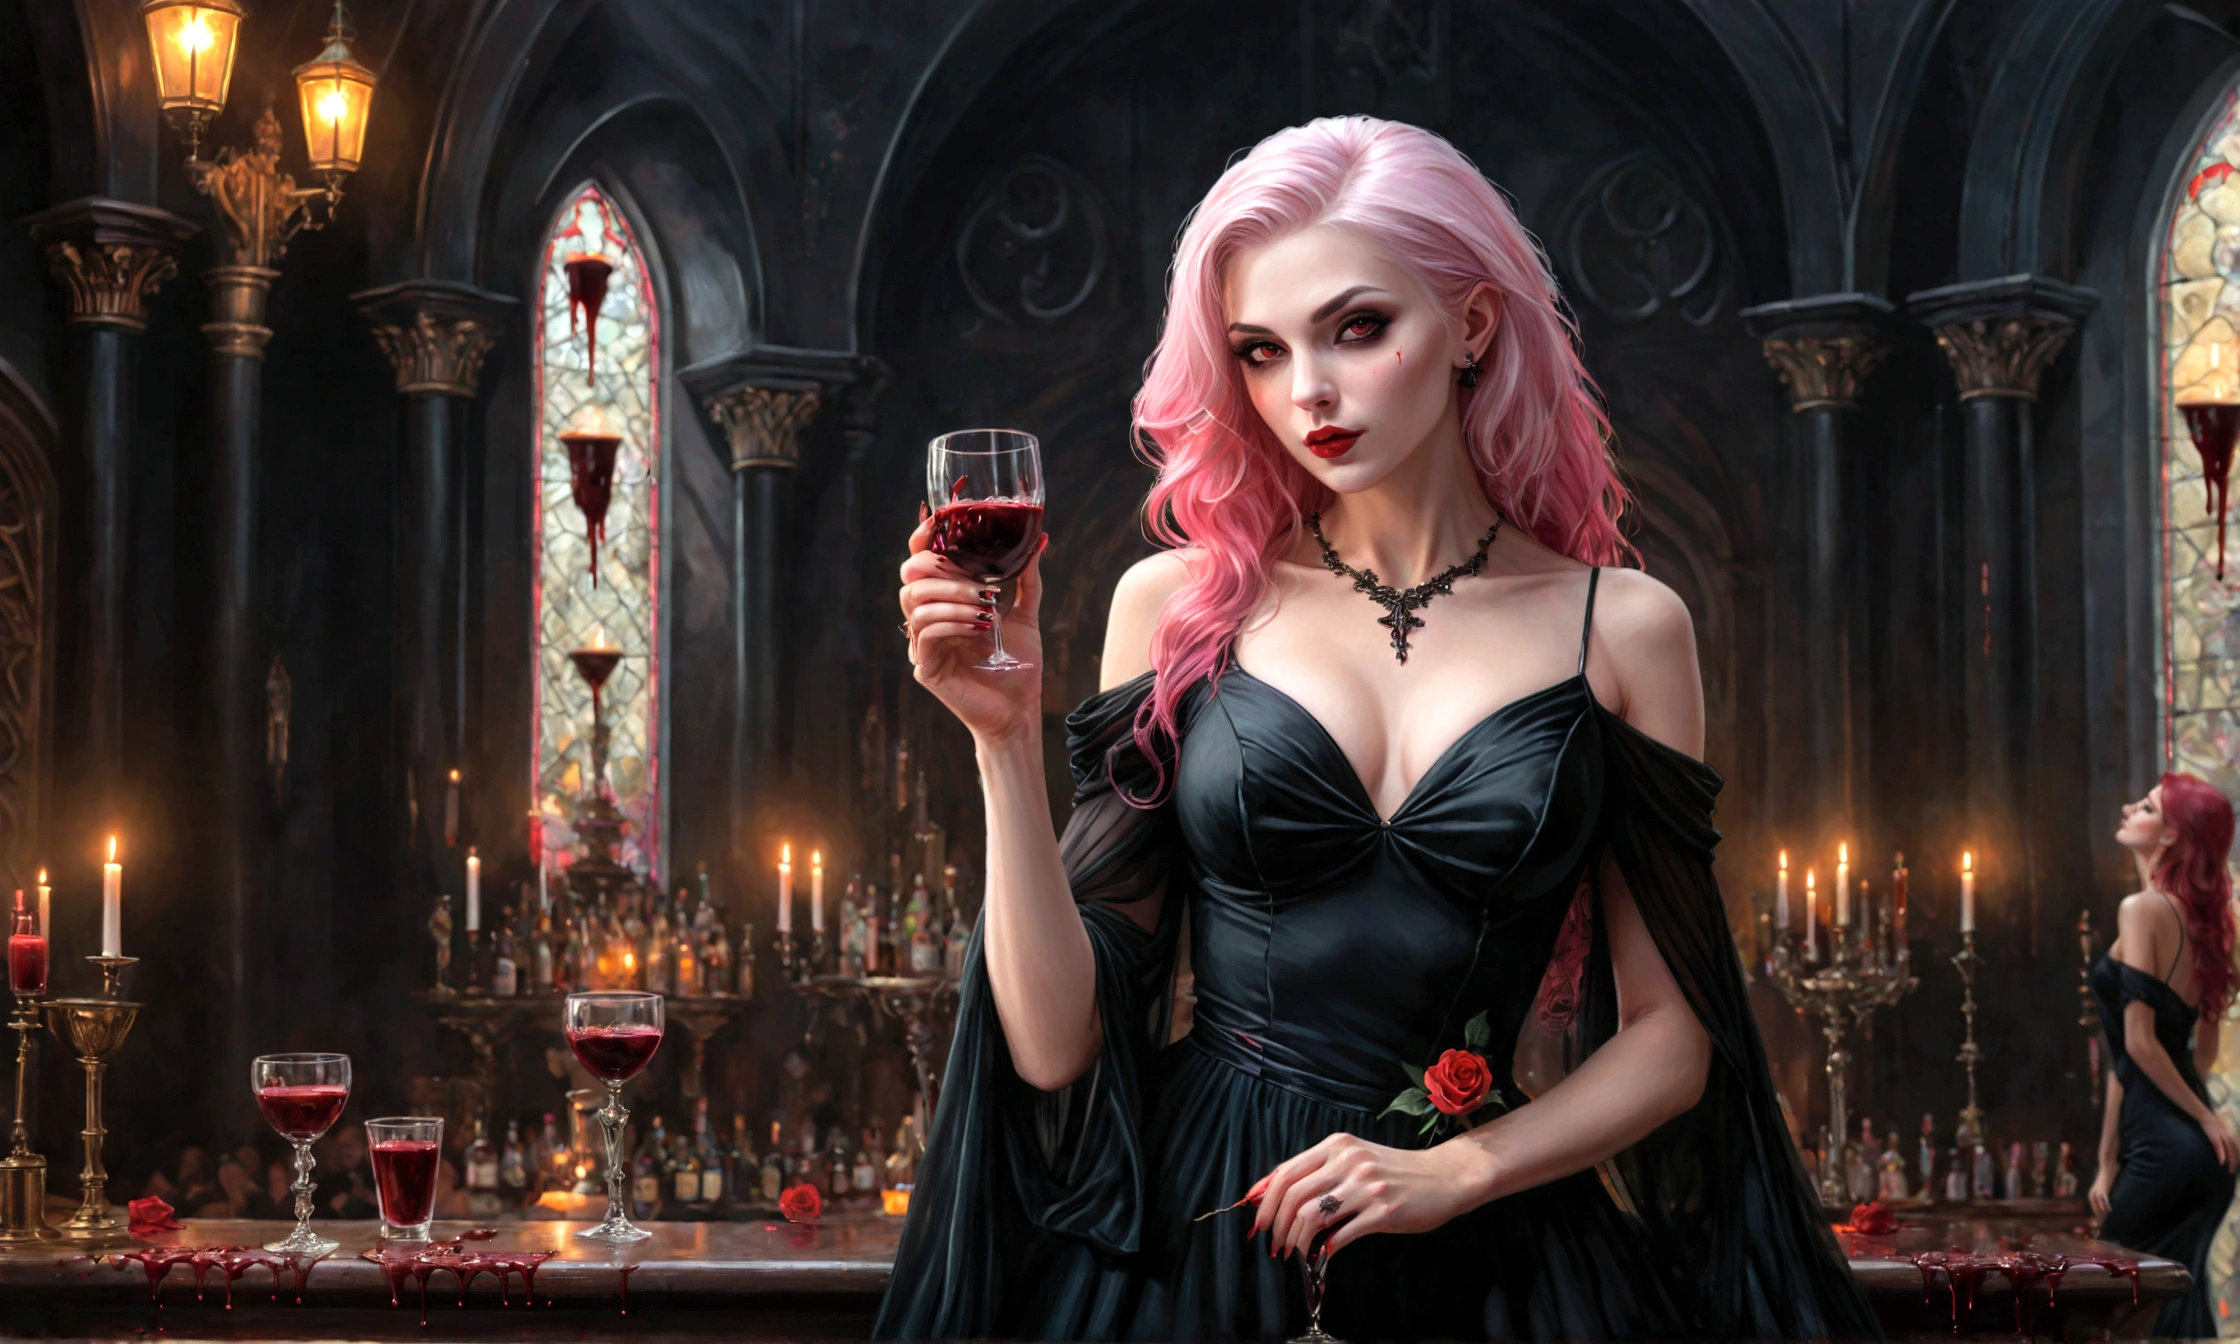 Арафед, темное фэнтези искусство, гламурный снимок, наградной выстрел, Фотореалистичный, портрет женщины-вампира, пьющей ((стакан крови)), розовые волосы, Длинные волосы, красные губы, блестящие глаза, есть отпечаток белой розы, динамический цвет, она носит, Элегантный (черное платье: 1.5), католическая церковь и алтарь фон, Бар фон, 16 тыс., Ультра подробный, шедевр, Лучшее качество, (чрезвычайно подробный), Темный стиль живописи